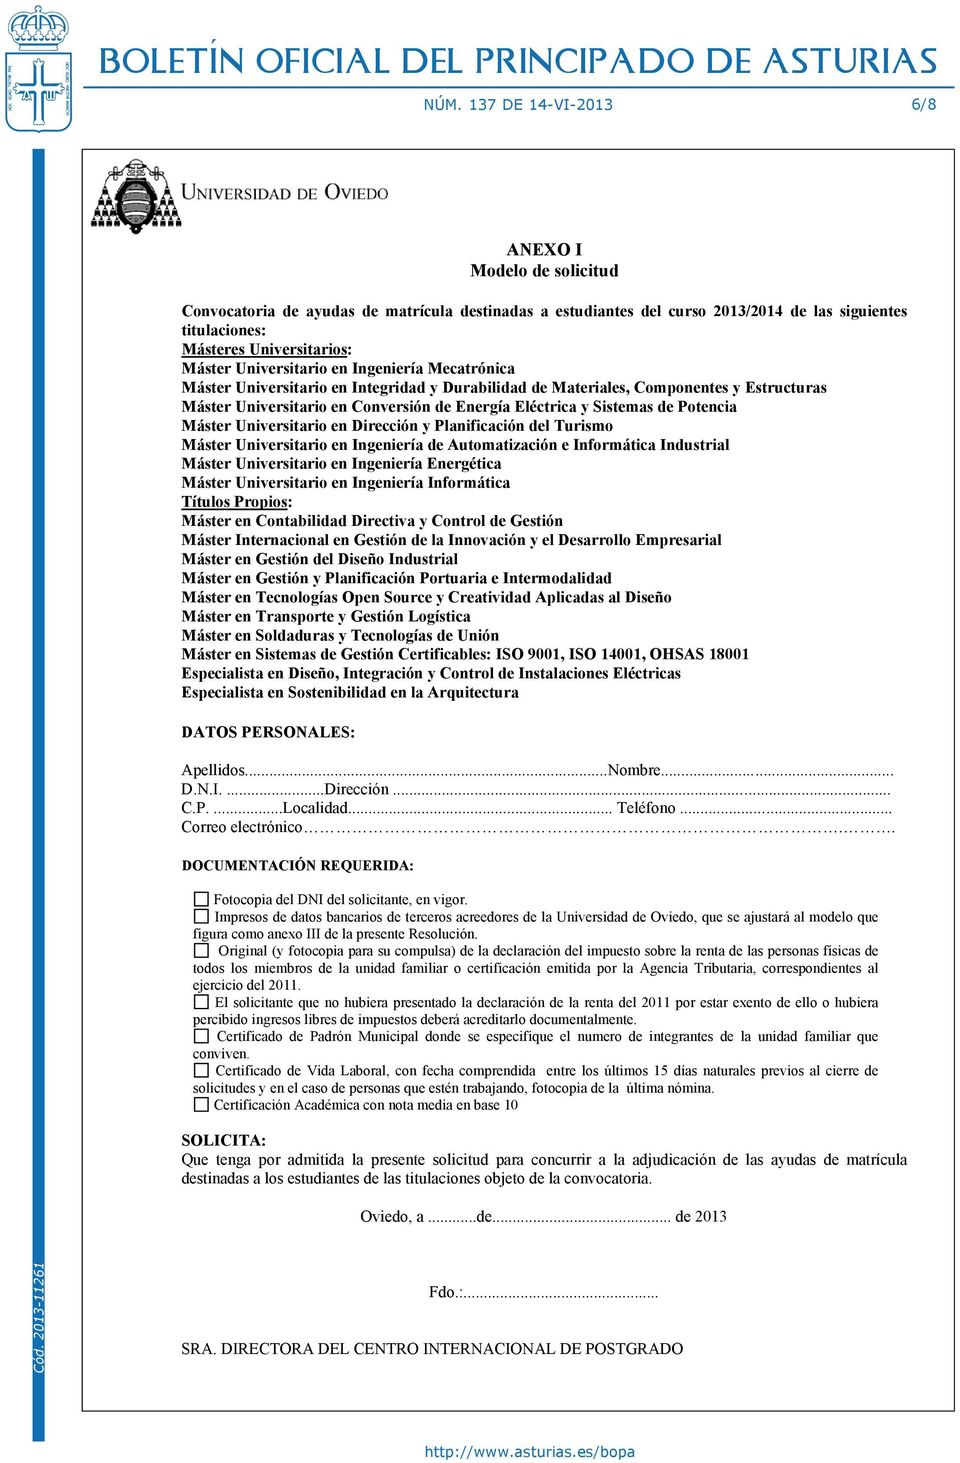 Impresos de datos bancarios de terceros acreedores de la Universidad de Oviedo, que se ajustará al modelo que figura como anexo III de la presente Resolución.